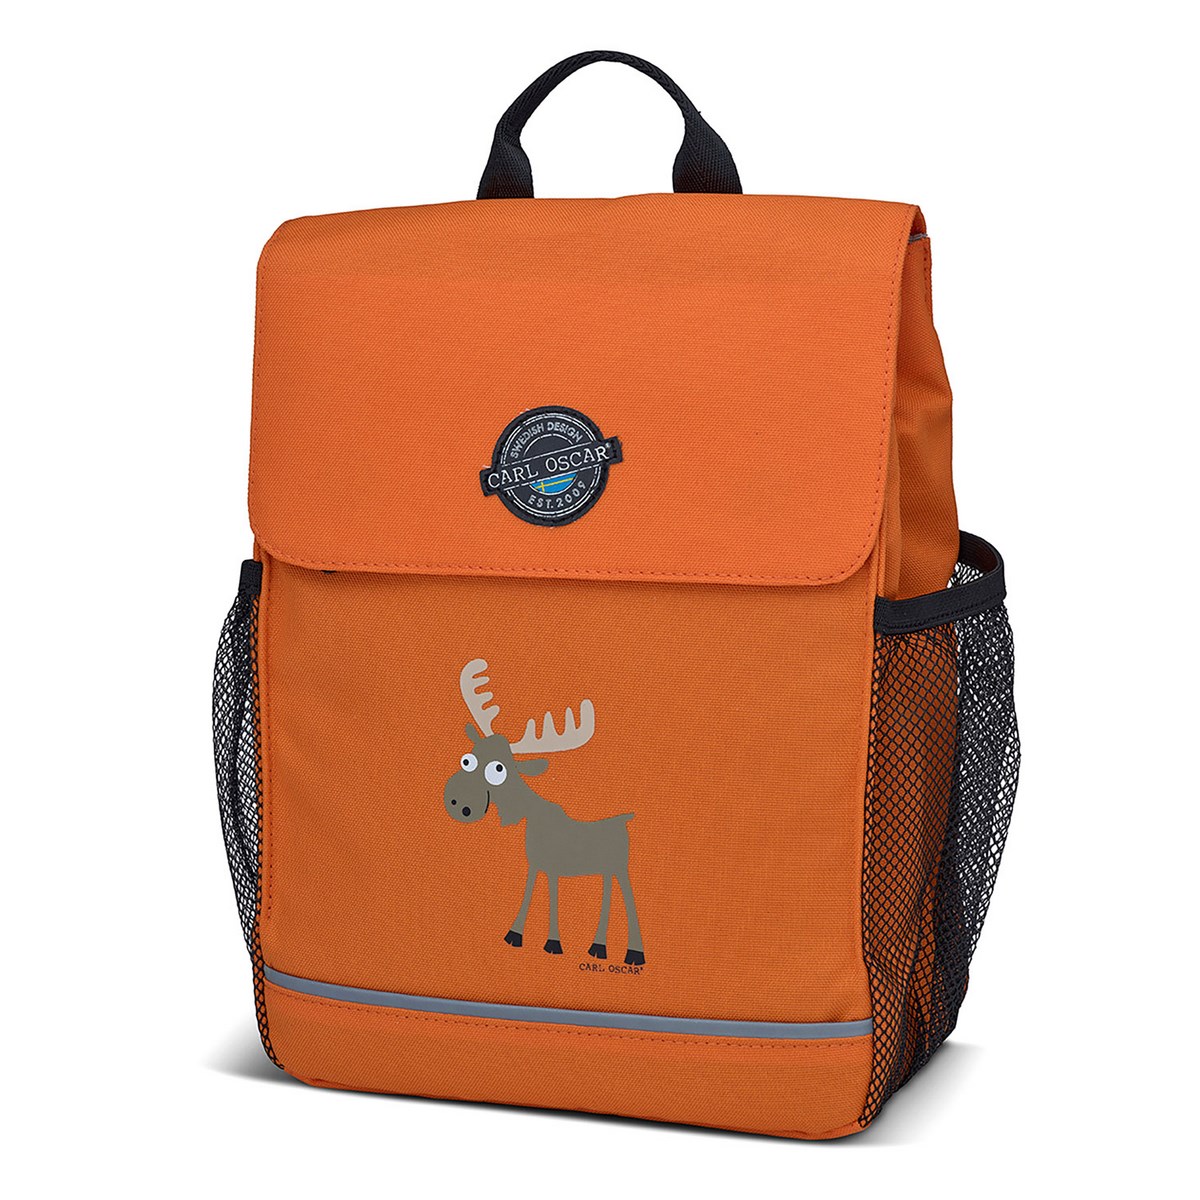 Рюкзак детский Pack n' Snack™ Moose Orange, 22х13 см, 30 см, Полиэстер, Carl Oscar, Швеция